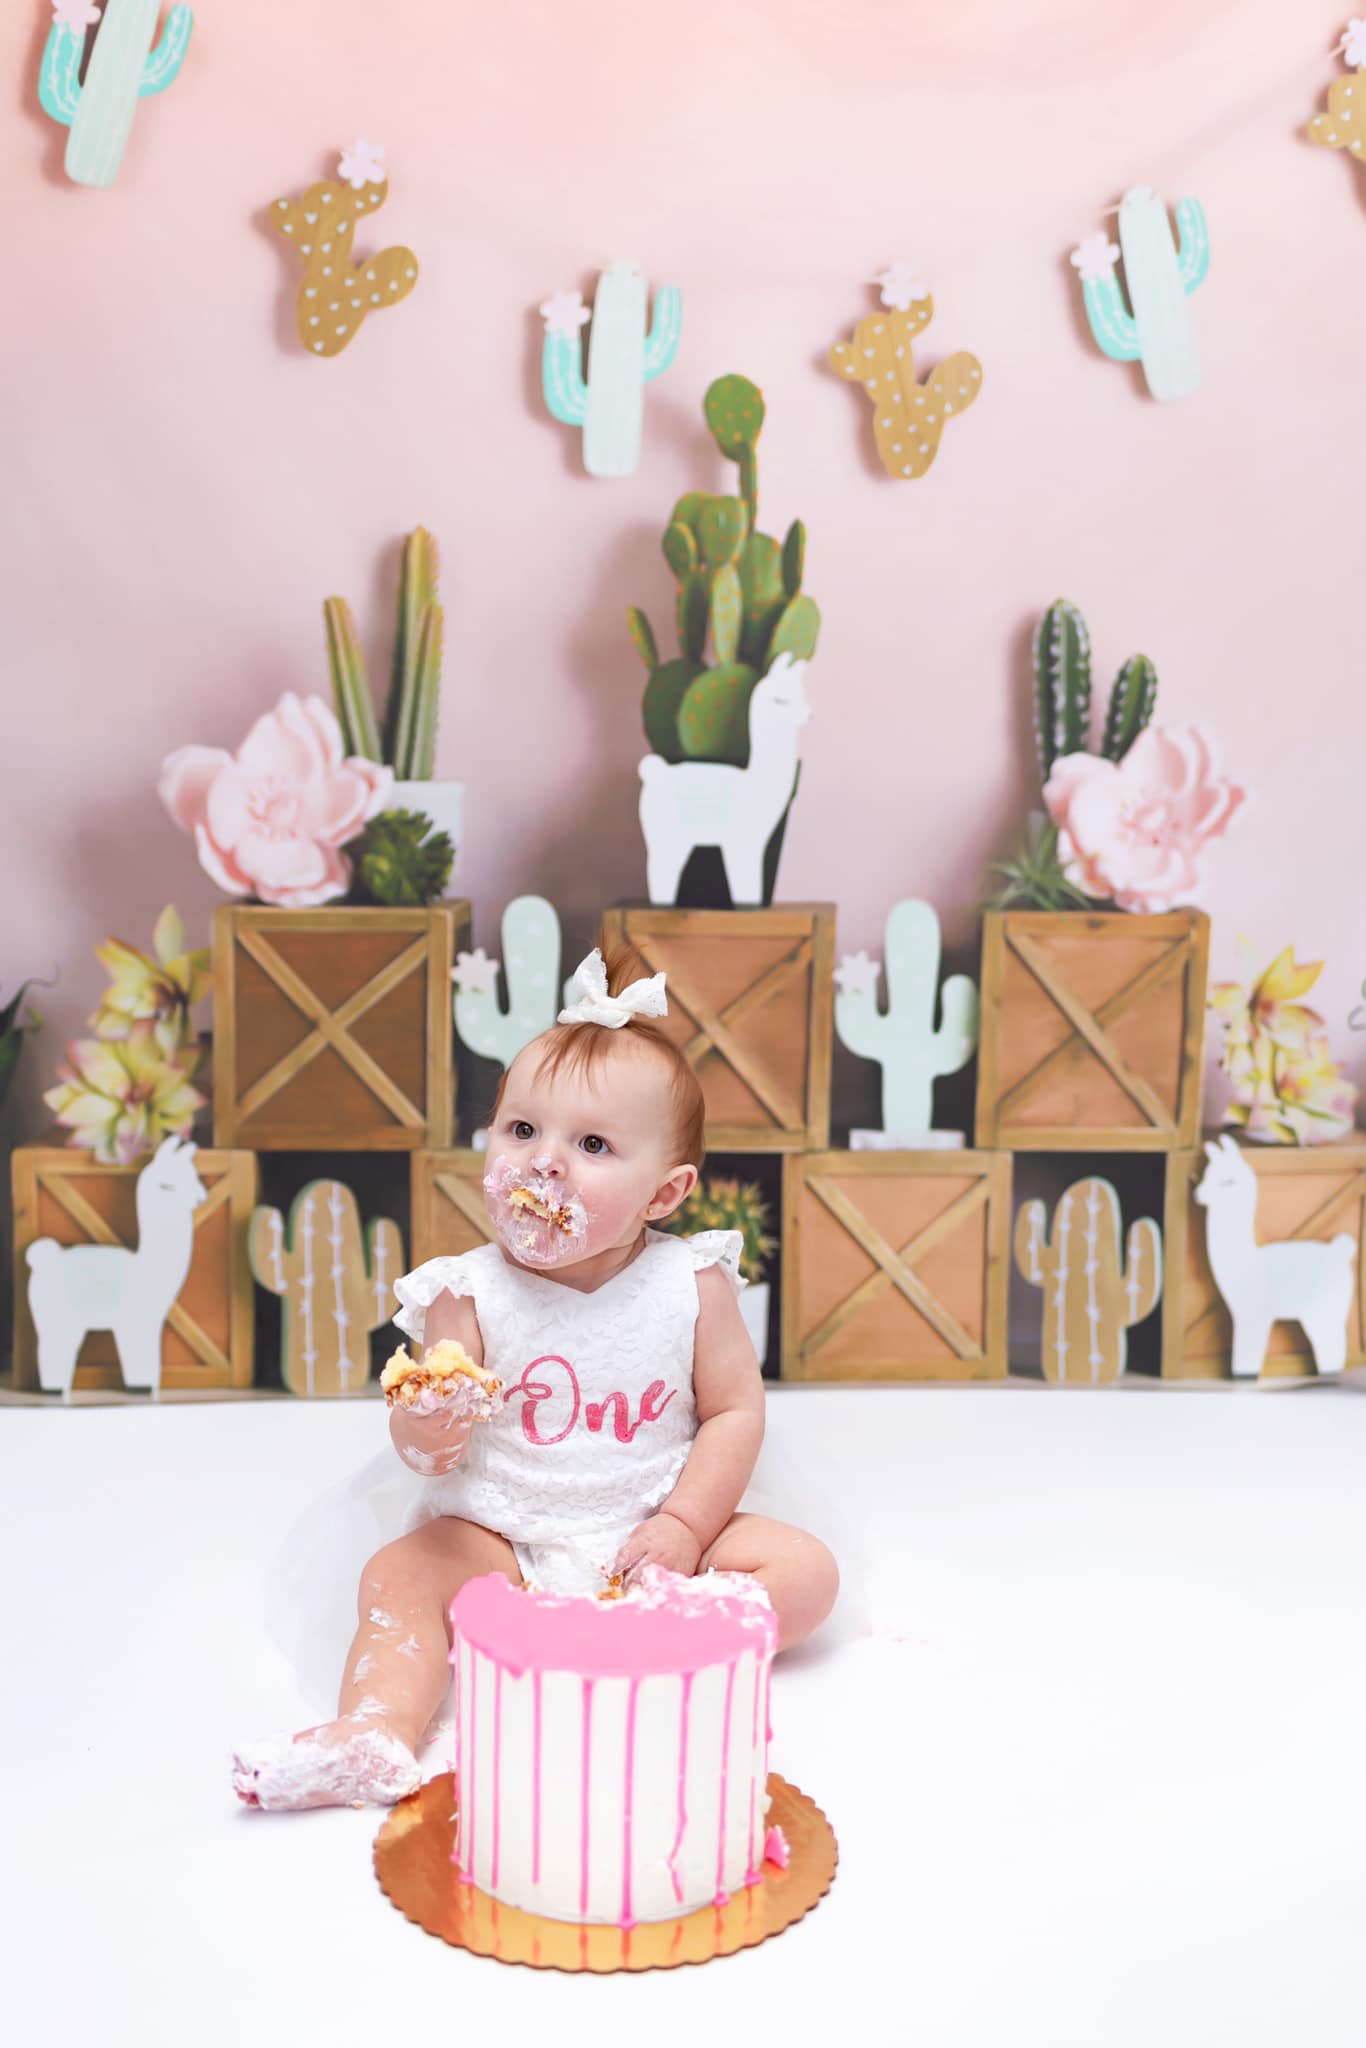 Kate Sommer  Pastelllamas mit kaktusrosa Hintergrund für Kinder Entworfen von Mandy Ringe Photography